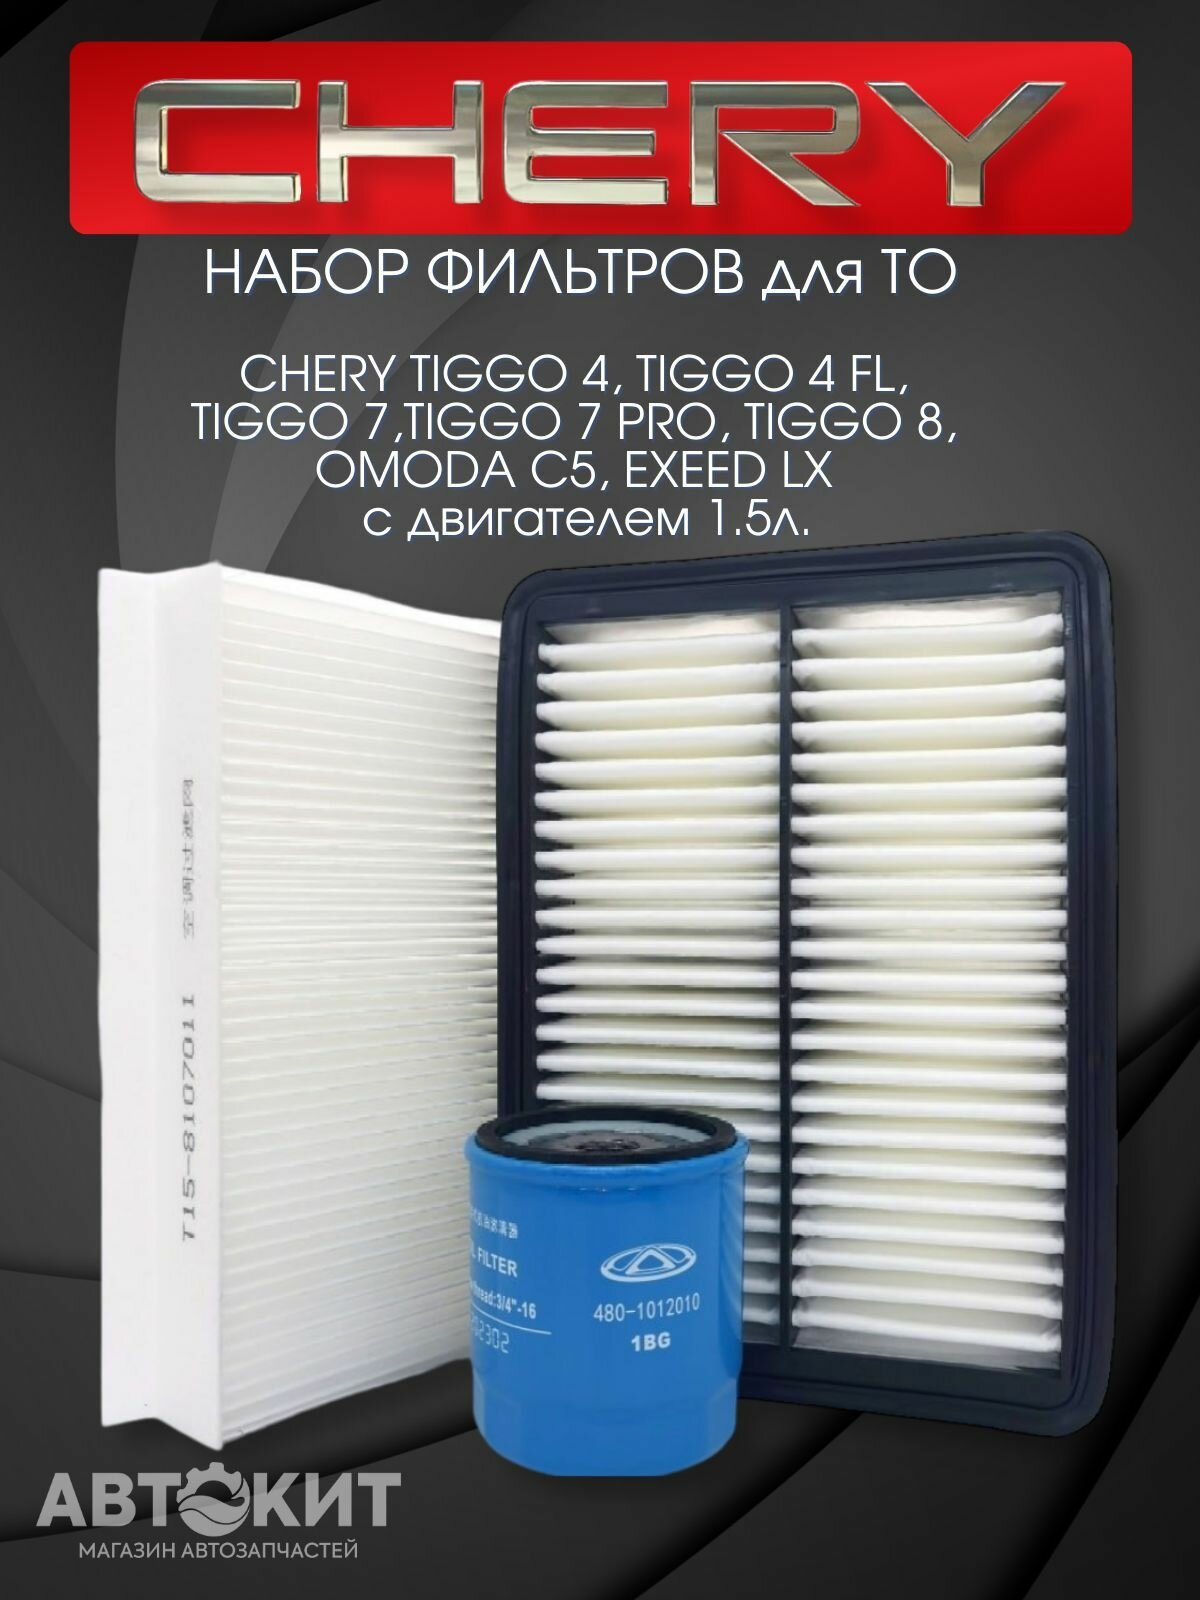 Набор фильтров для ТО Chery Tiggo 4, 7, 7 pro, 8, OMODA C5 двигатель 1.5 литра EXEED LX